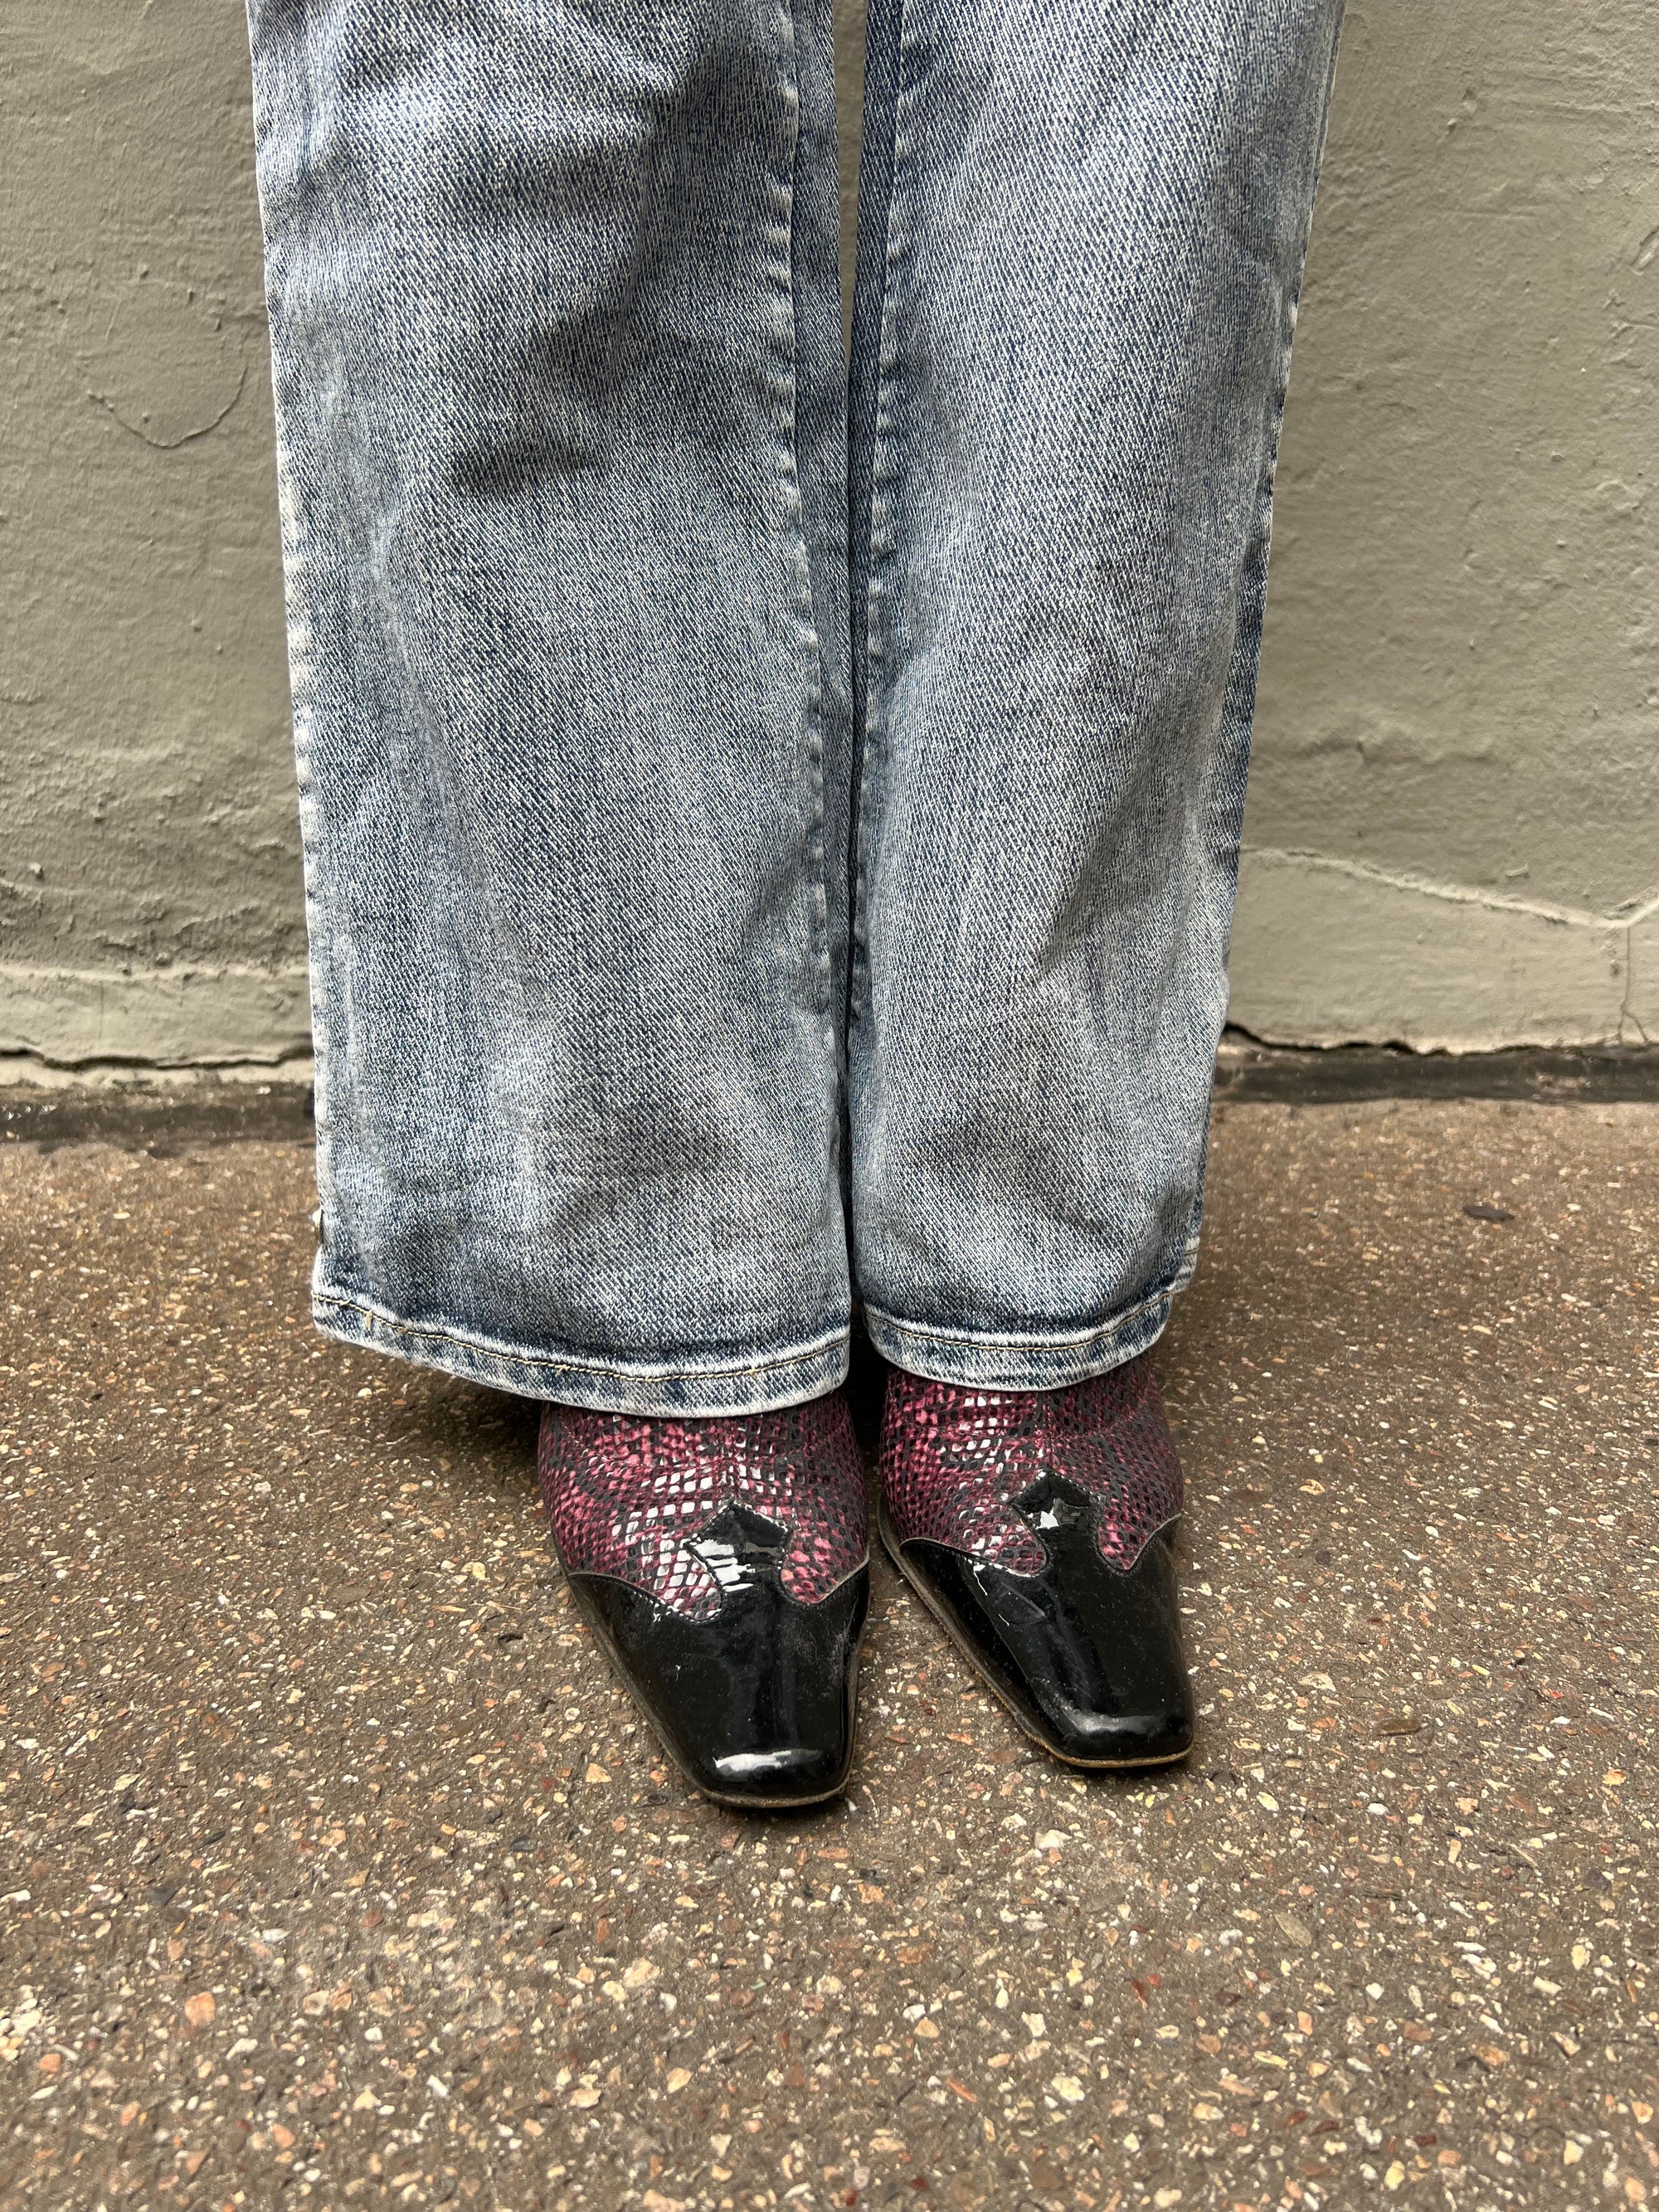 Zu sehen sind lila Vintage Snake Heels getragen vor einem grauen Hintergrund.